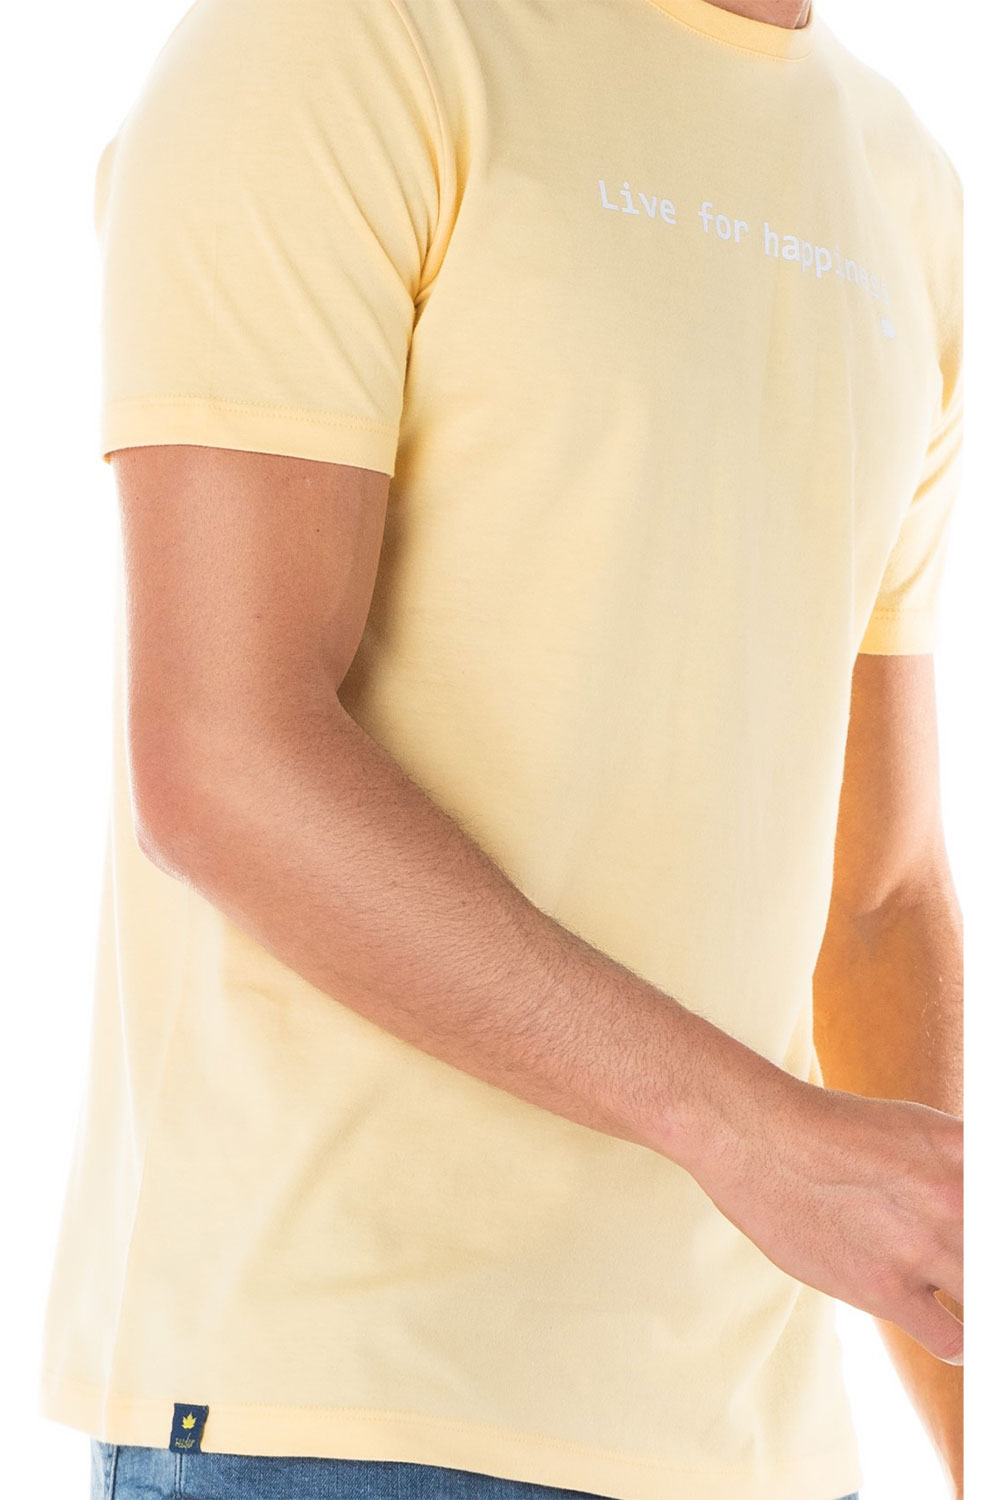 camiseta msaculina amarela com mensagem se0301199 am0018 4